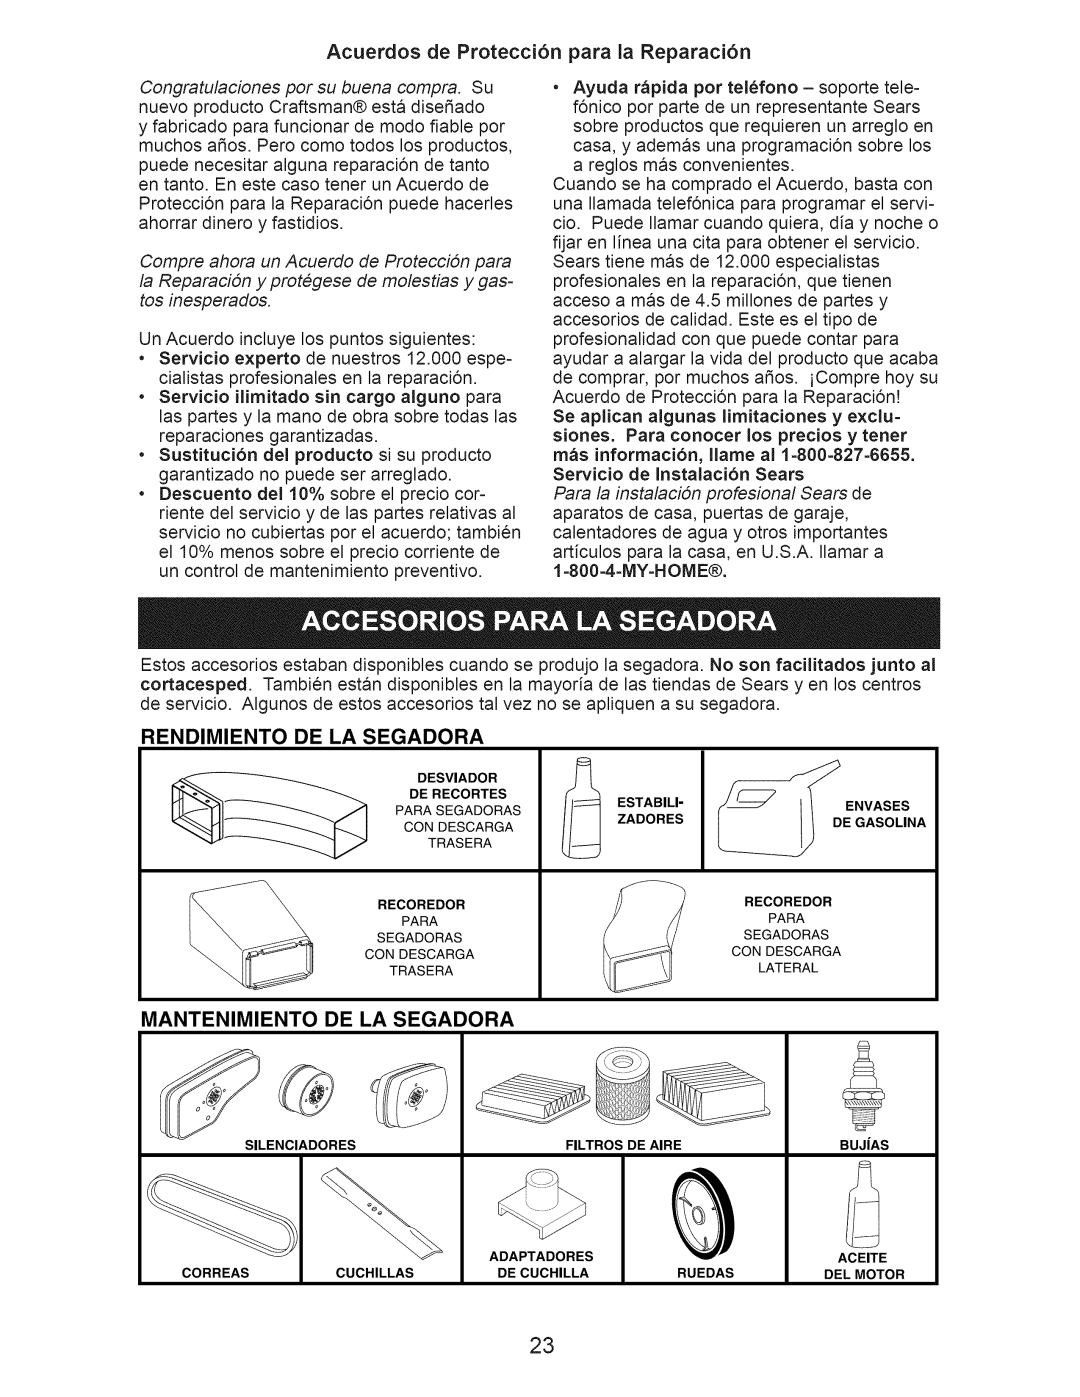 Craftsman 917.376231 Acuerdos de Protecci6n para la Reparaci6n, Rendimiento De La Segadora, Mantenimiento De La Segadora 